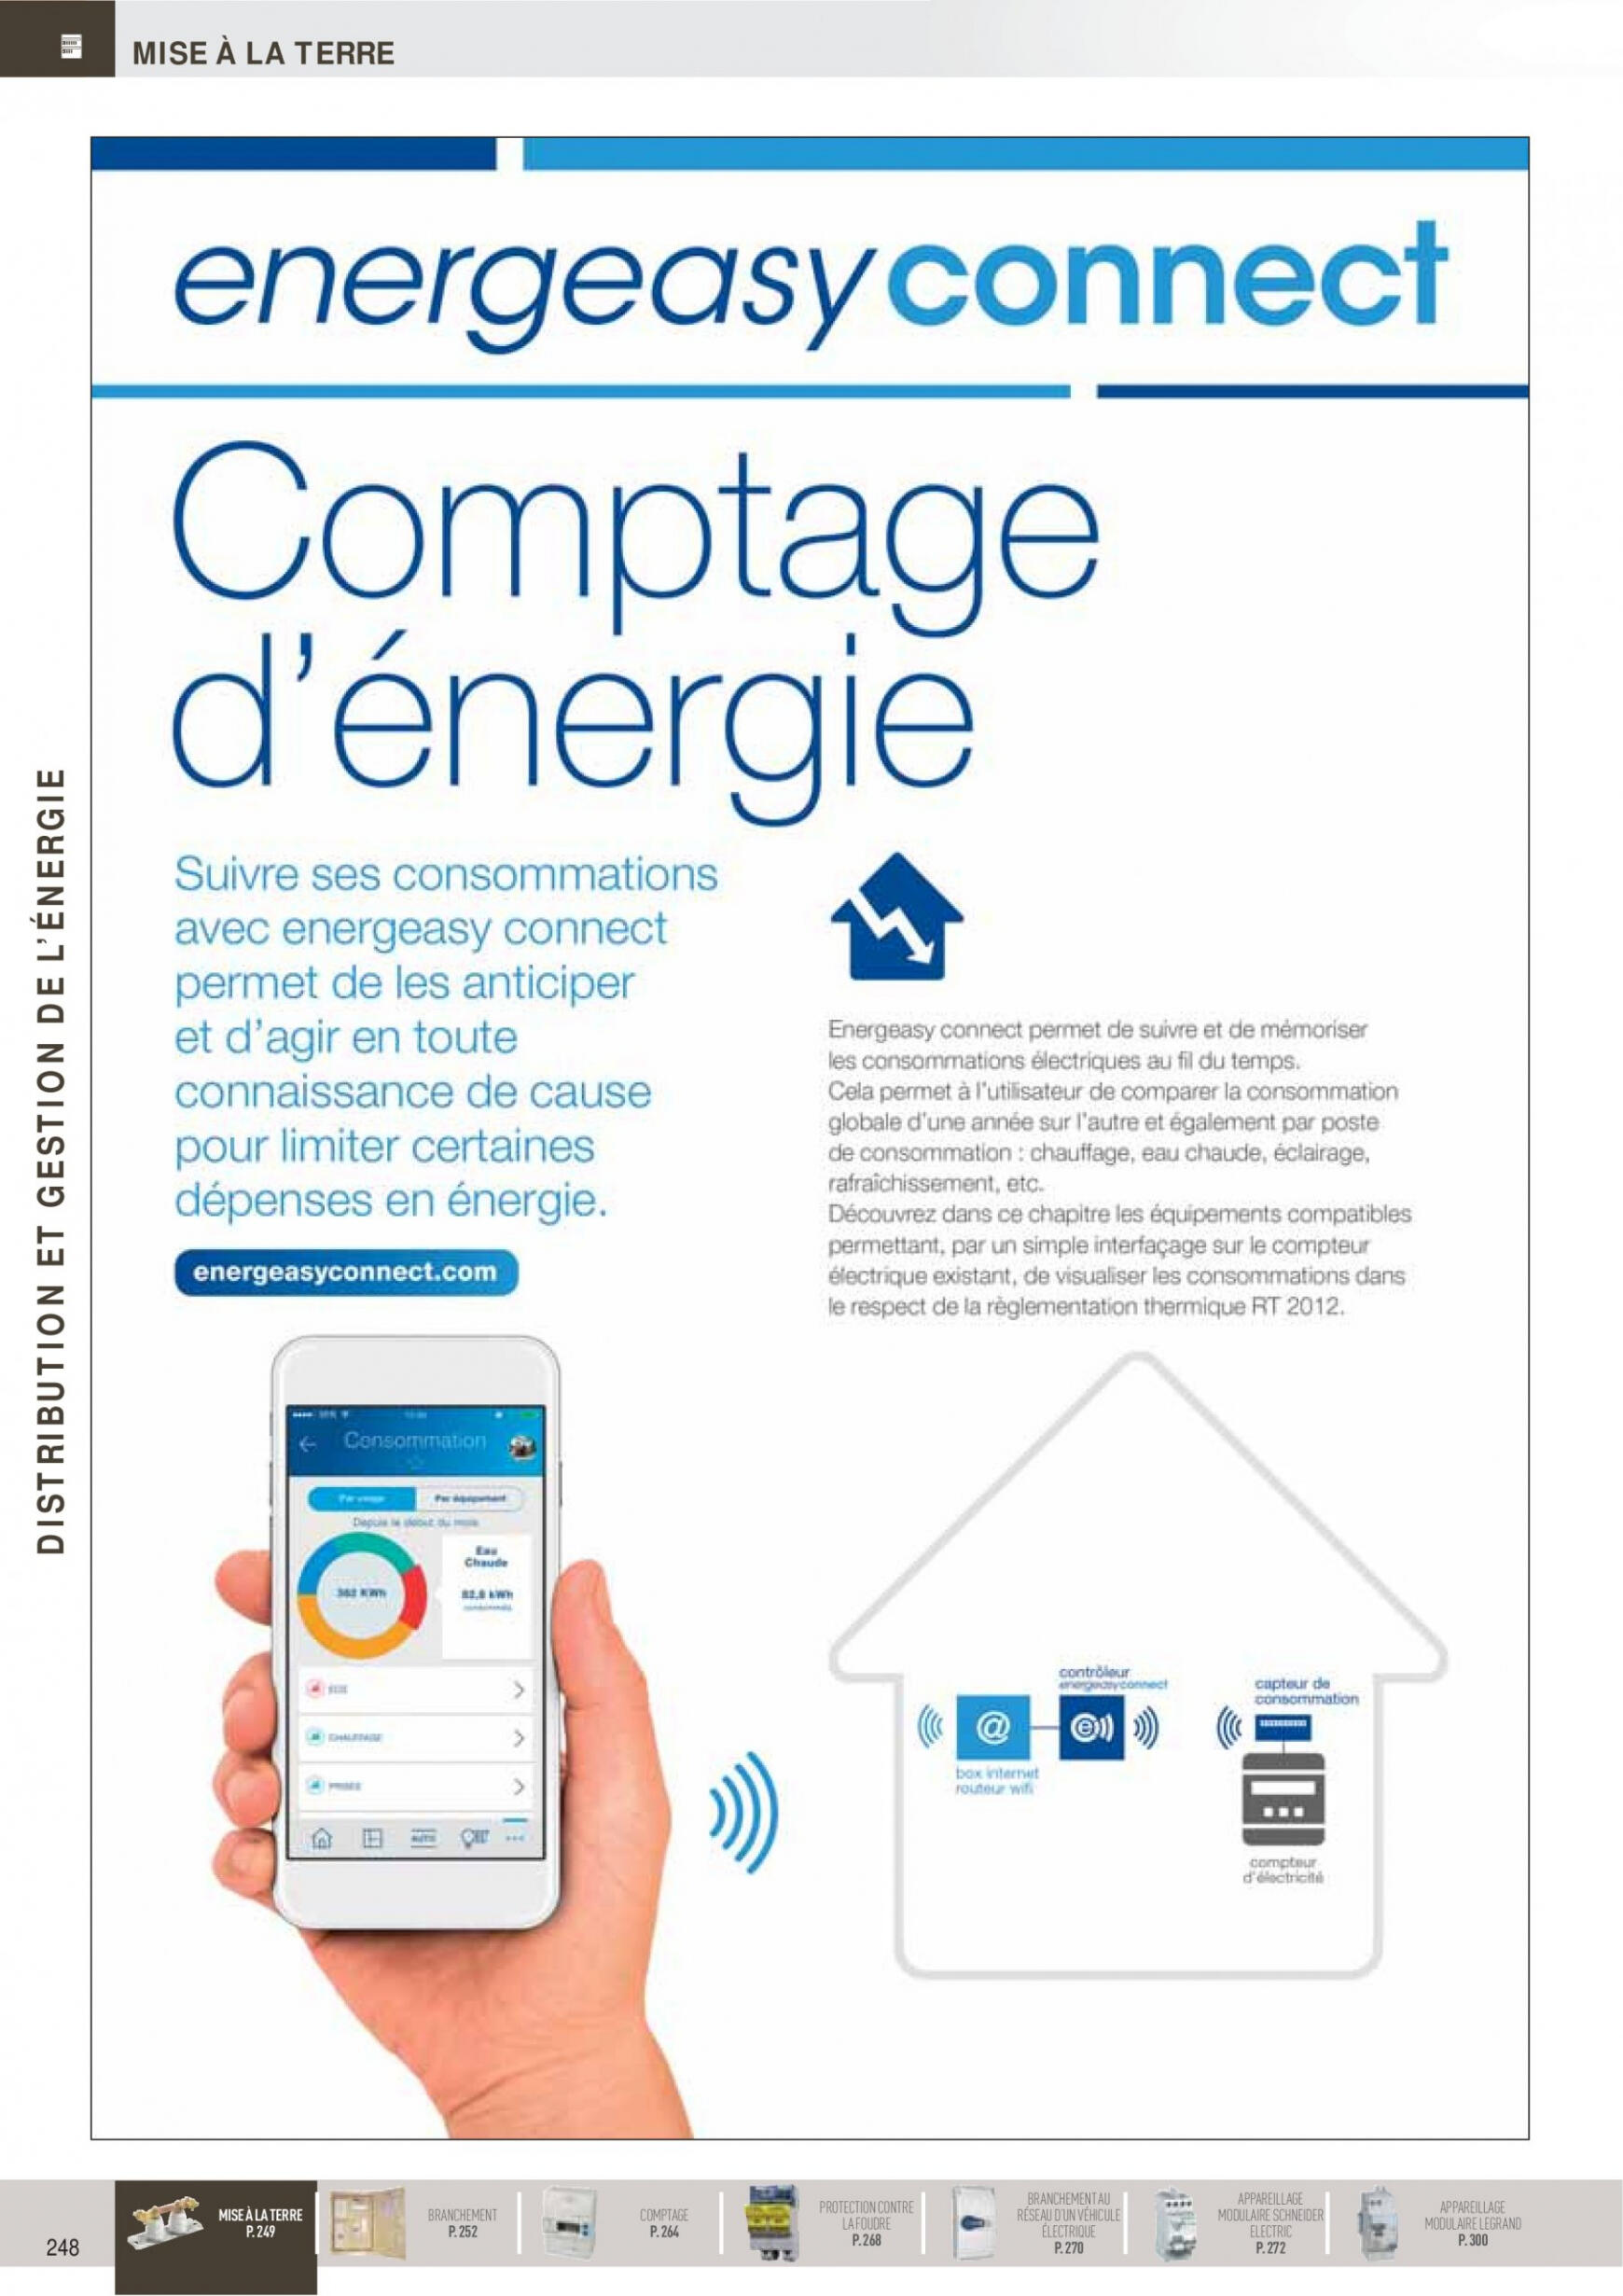 rexel - Rexel - Distribution et Gestion de l'Energie - page: 2